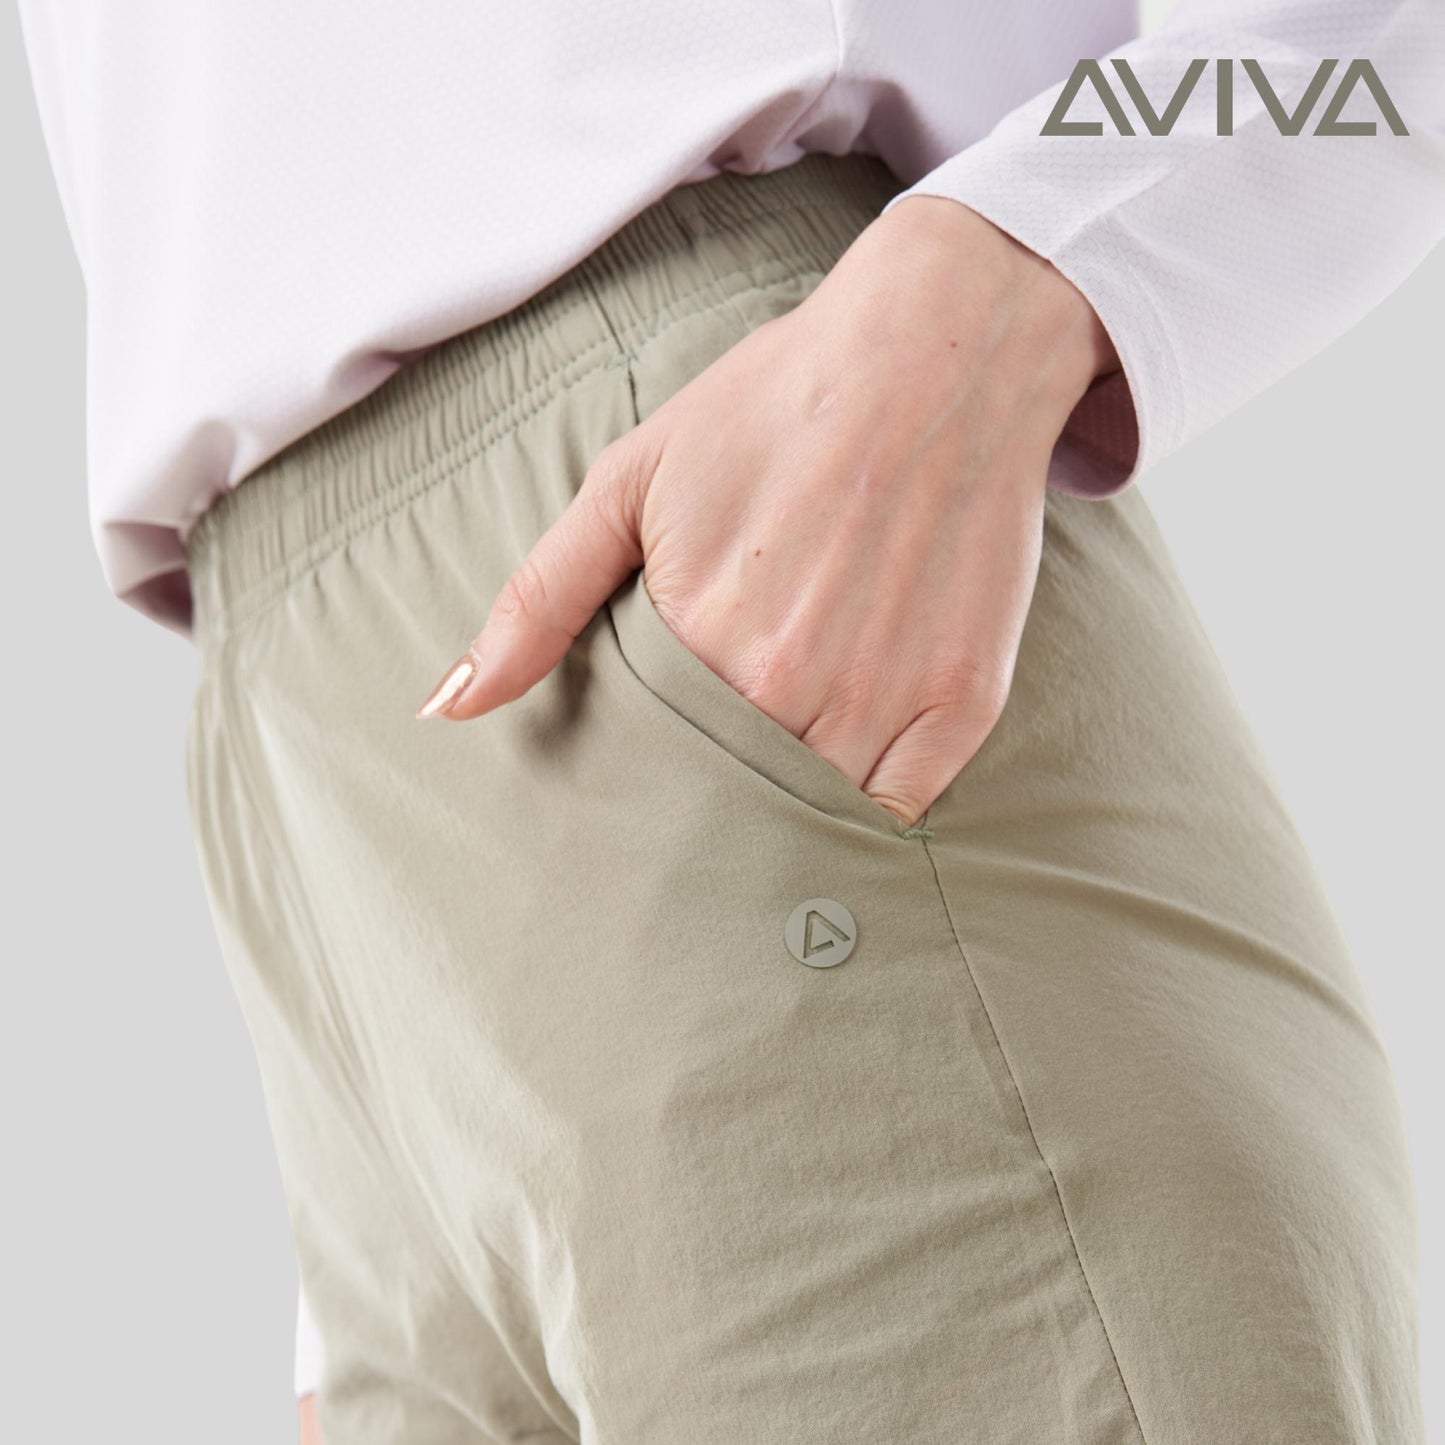 Aviva UV Protection Leisure Women Short Pants (81-2066)